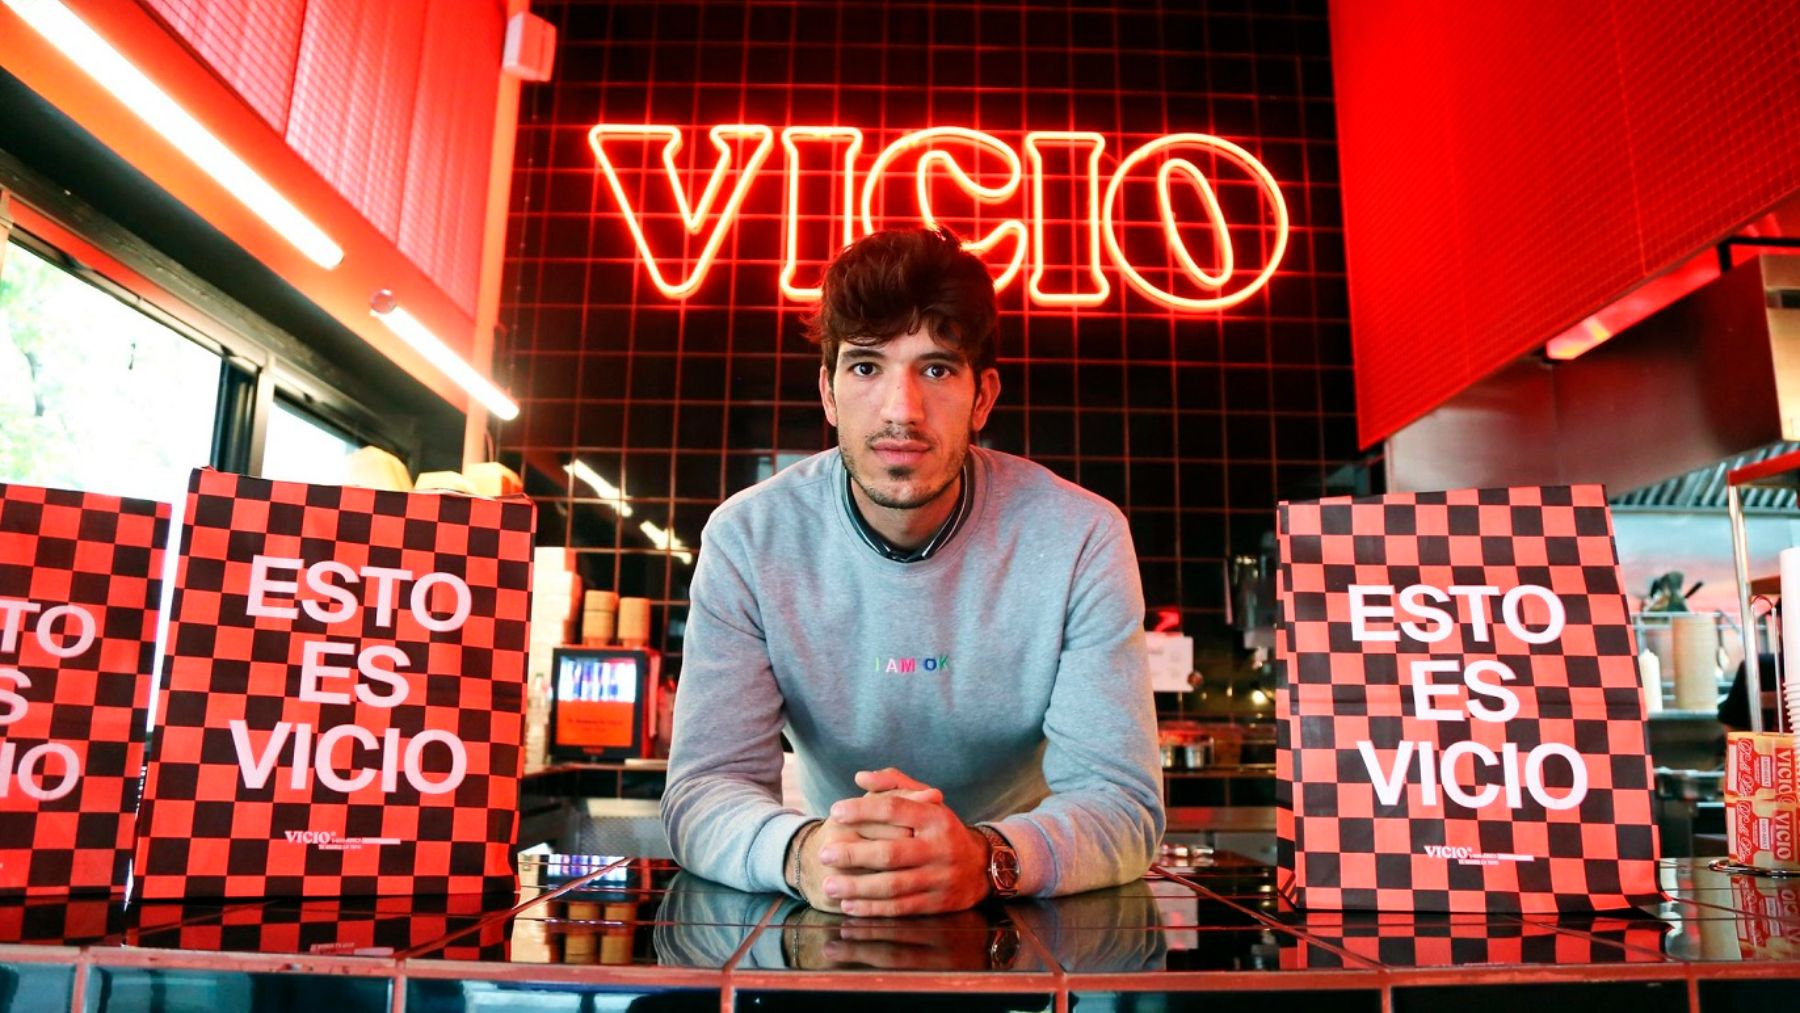 Vicio es la nueva hamburguesería de moda en Madrid